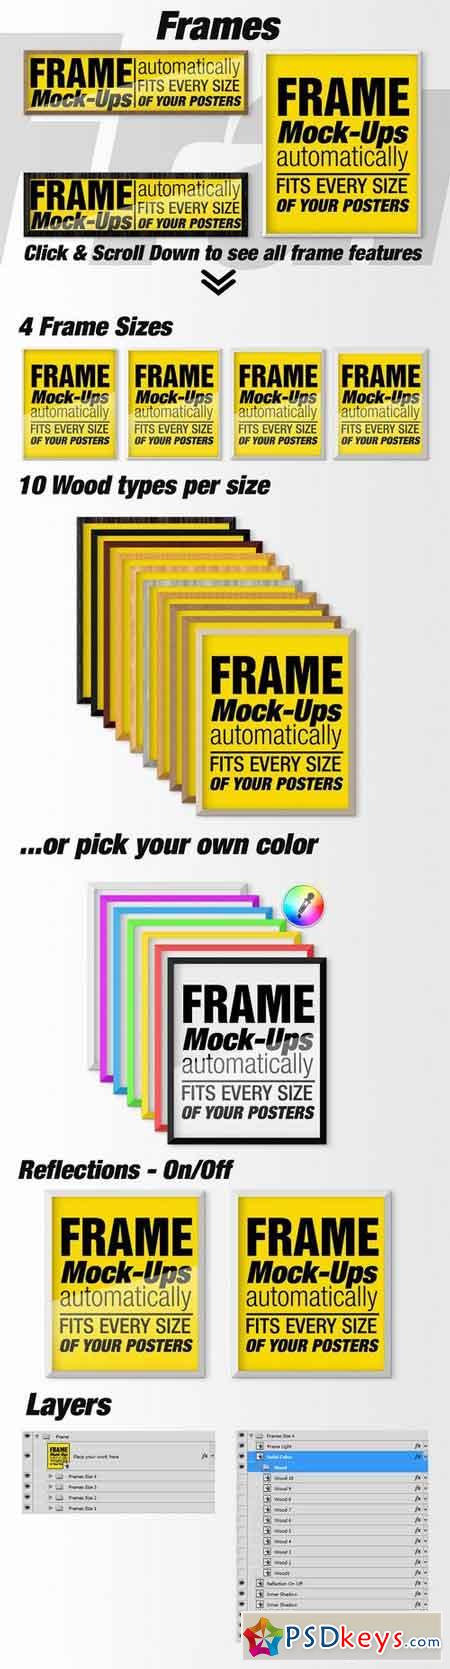 Download Canvas Mockups - Frames Mockups v 65 1513800 » Free ...